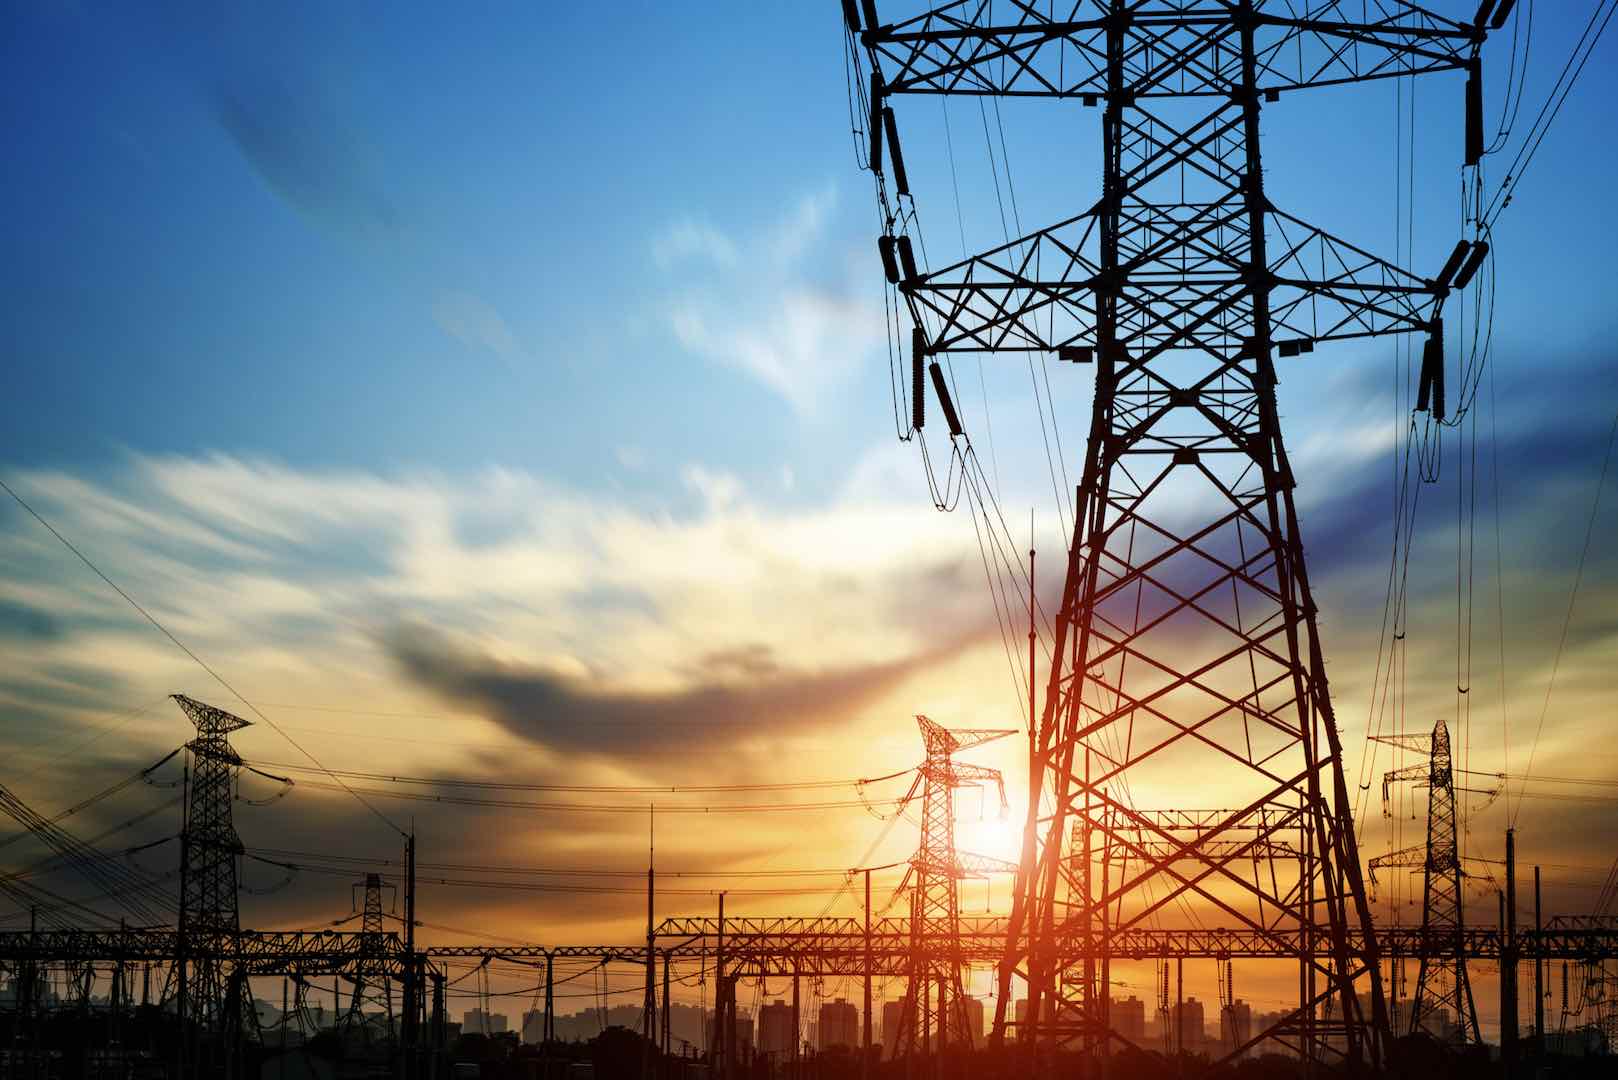 تقرير: توسعة الشبكة الكهربائية المصرية بمقدار 7 آلاف كيلومتر في غضون تسع سنوات